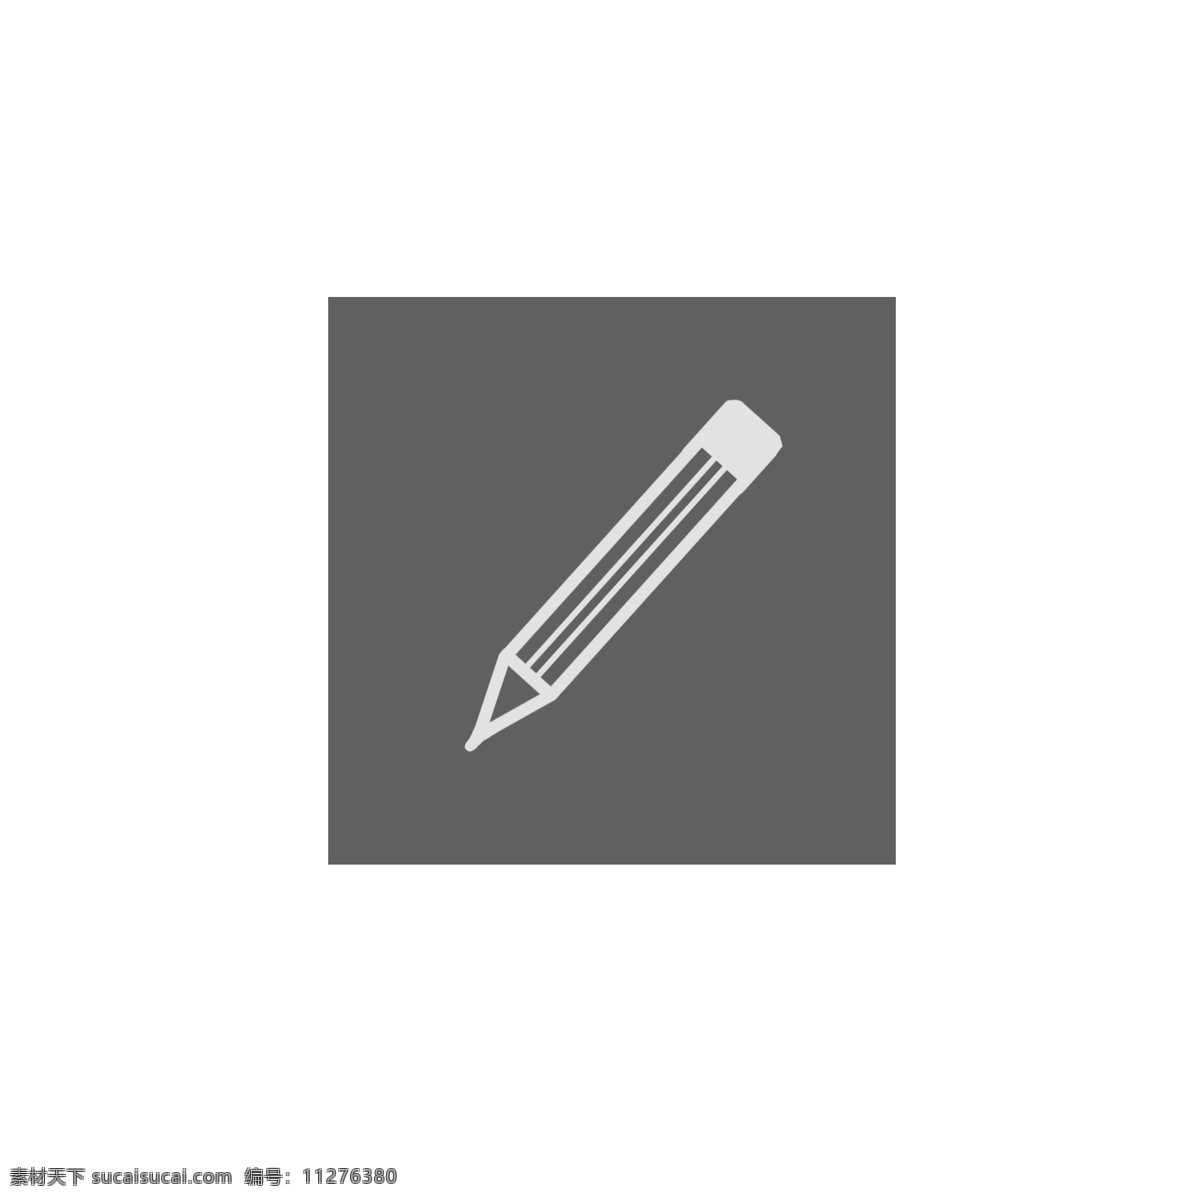 铅笔 通用 词 白色 图标 通用词 白色铅笔图标 卡通手绘 日用品 白色铅笔 装饰图案 免扣图png